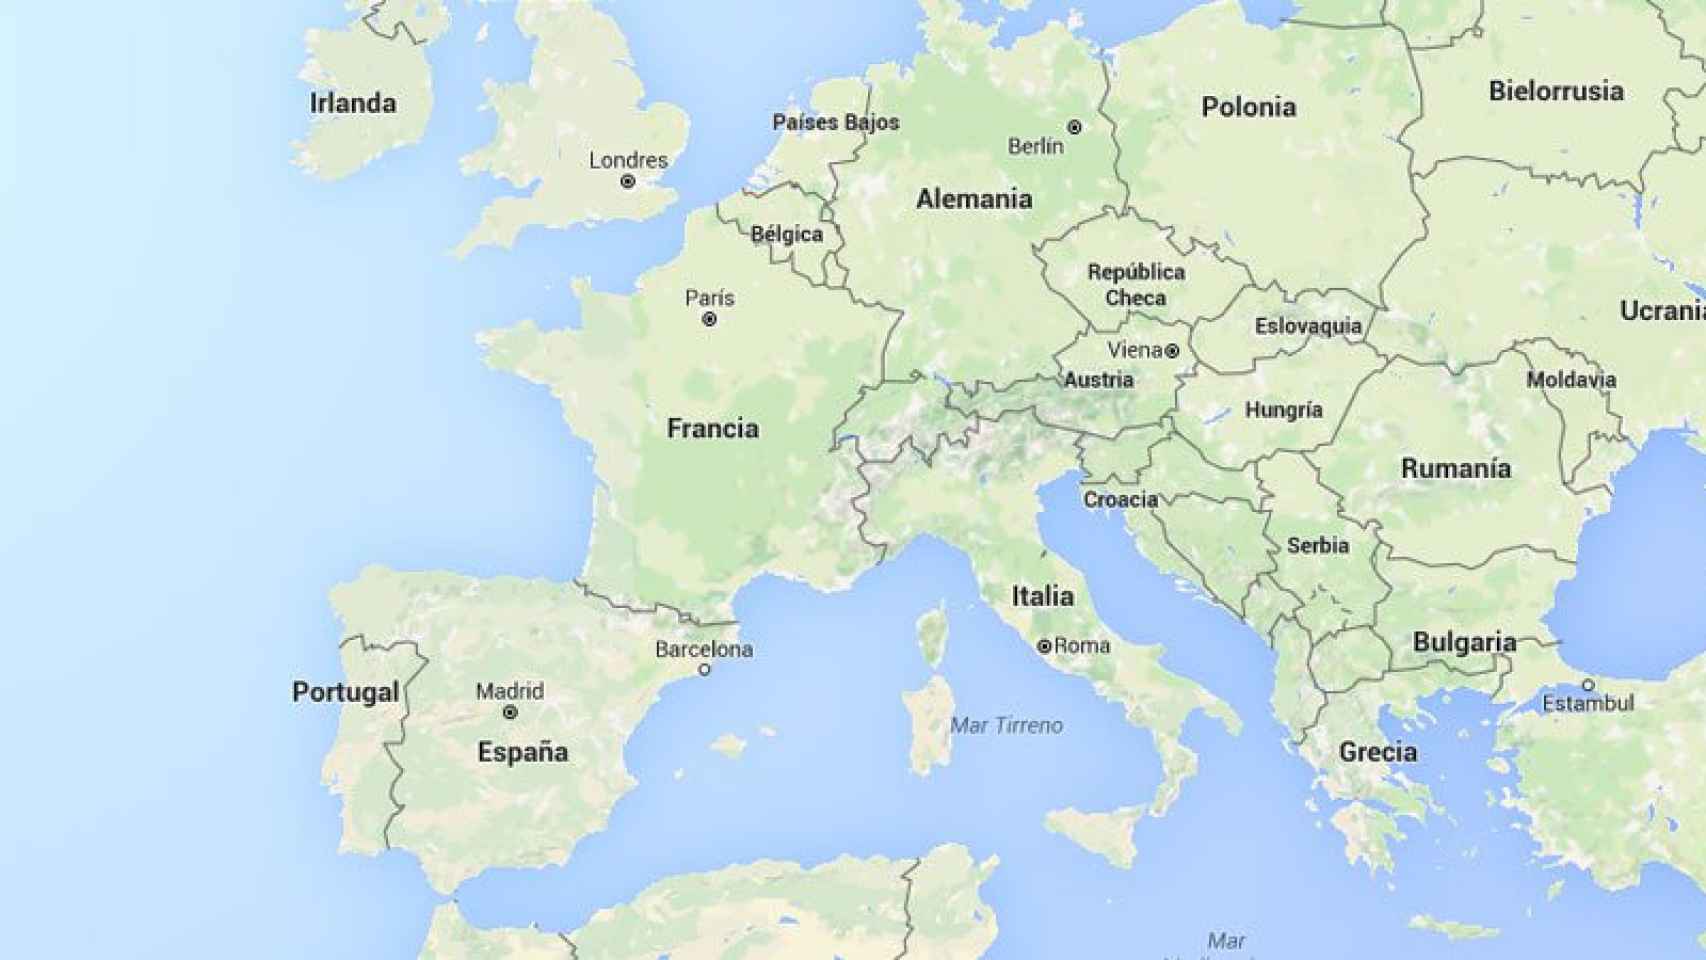 Mapa de una parte importante de Europa y norte de África.